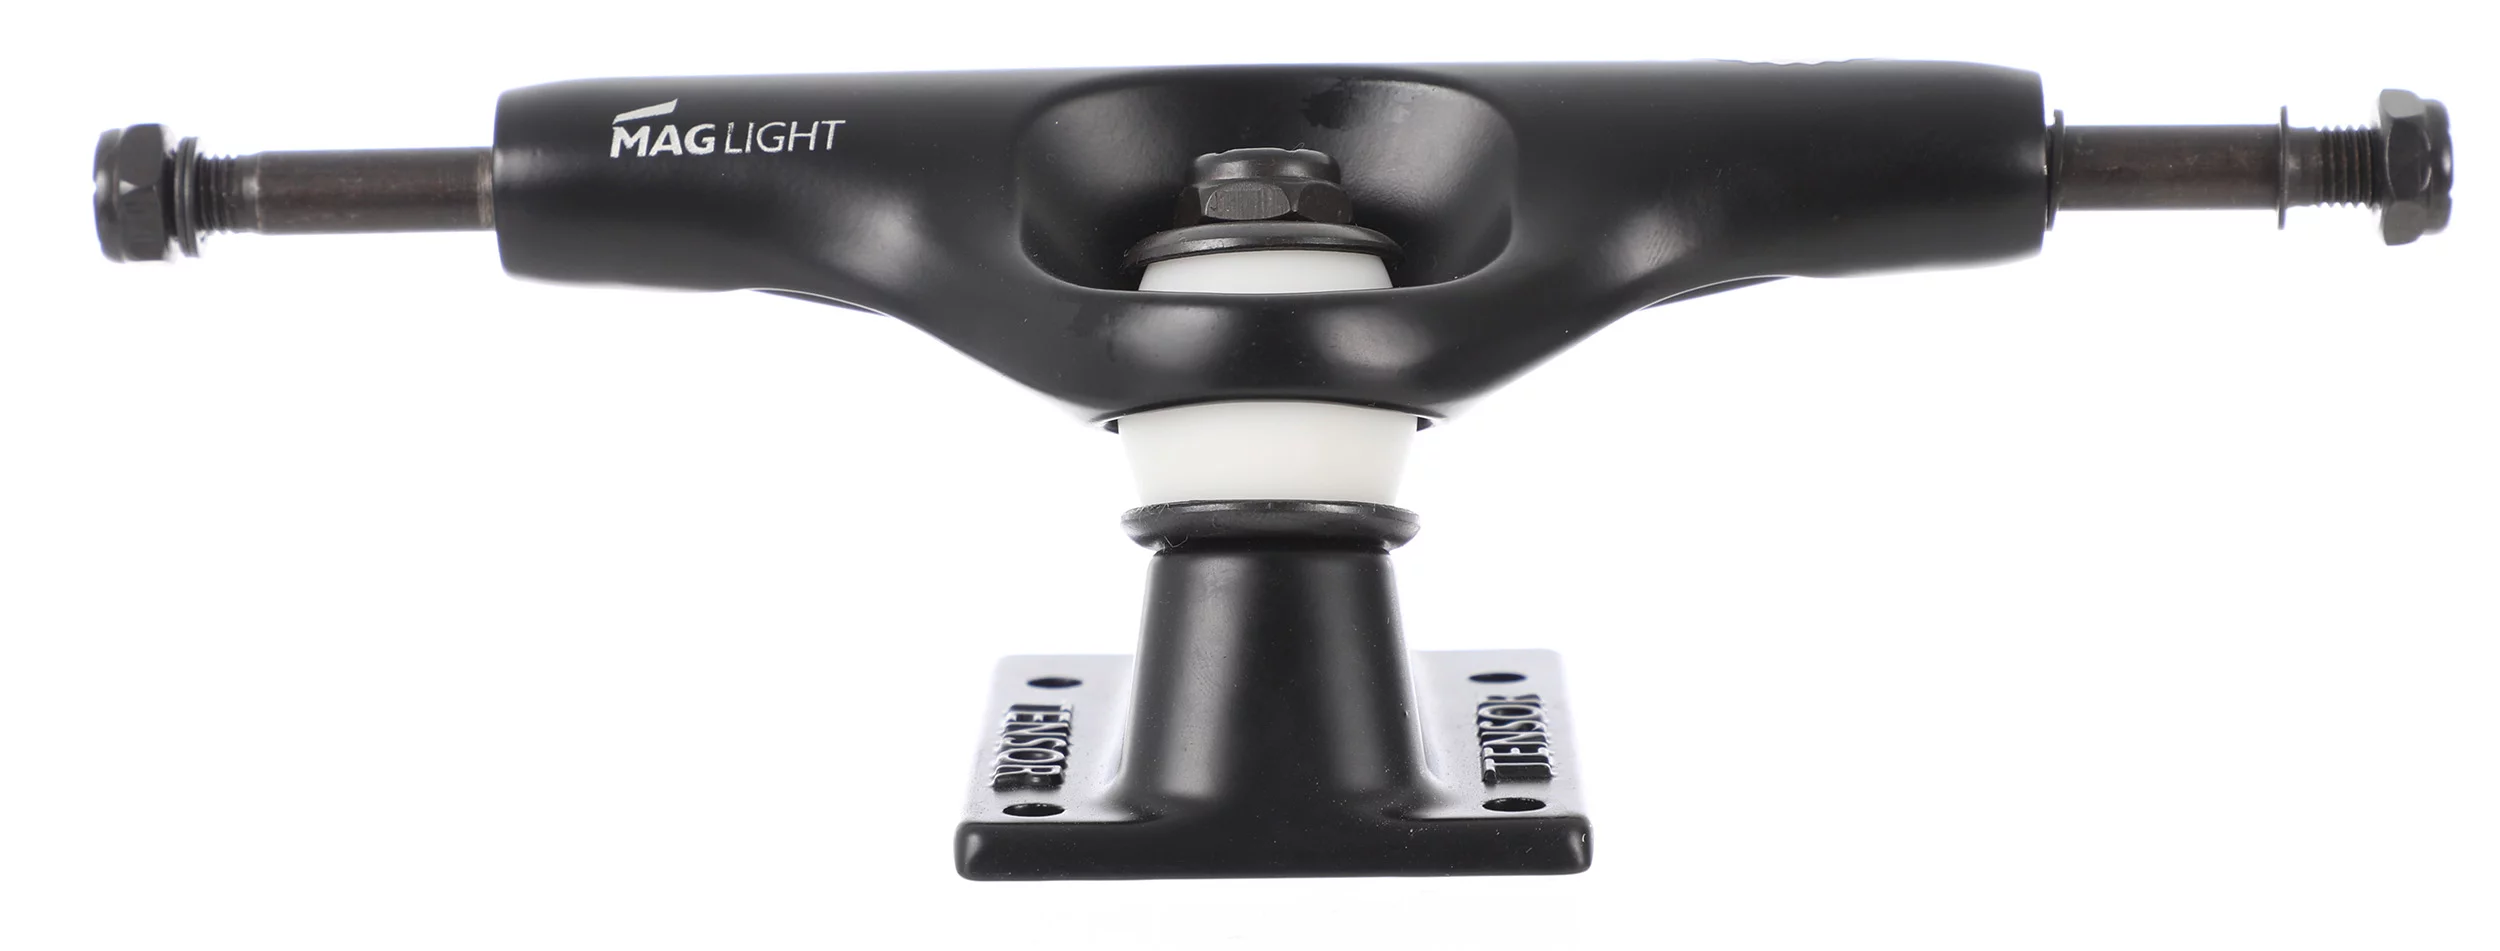 Tensor Mag Light Skateboard Trucks - black (5.25) | Tactics